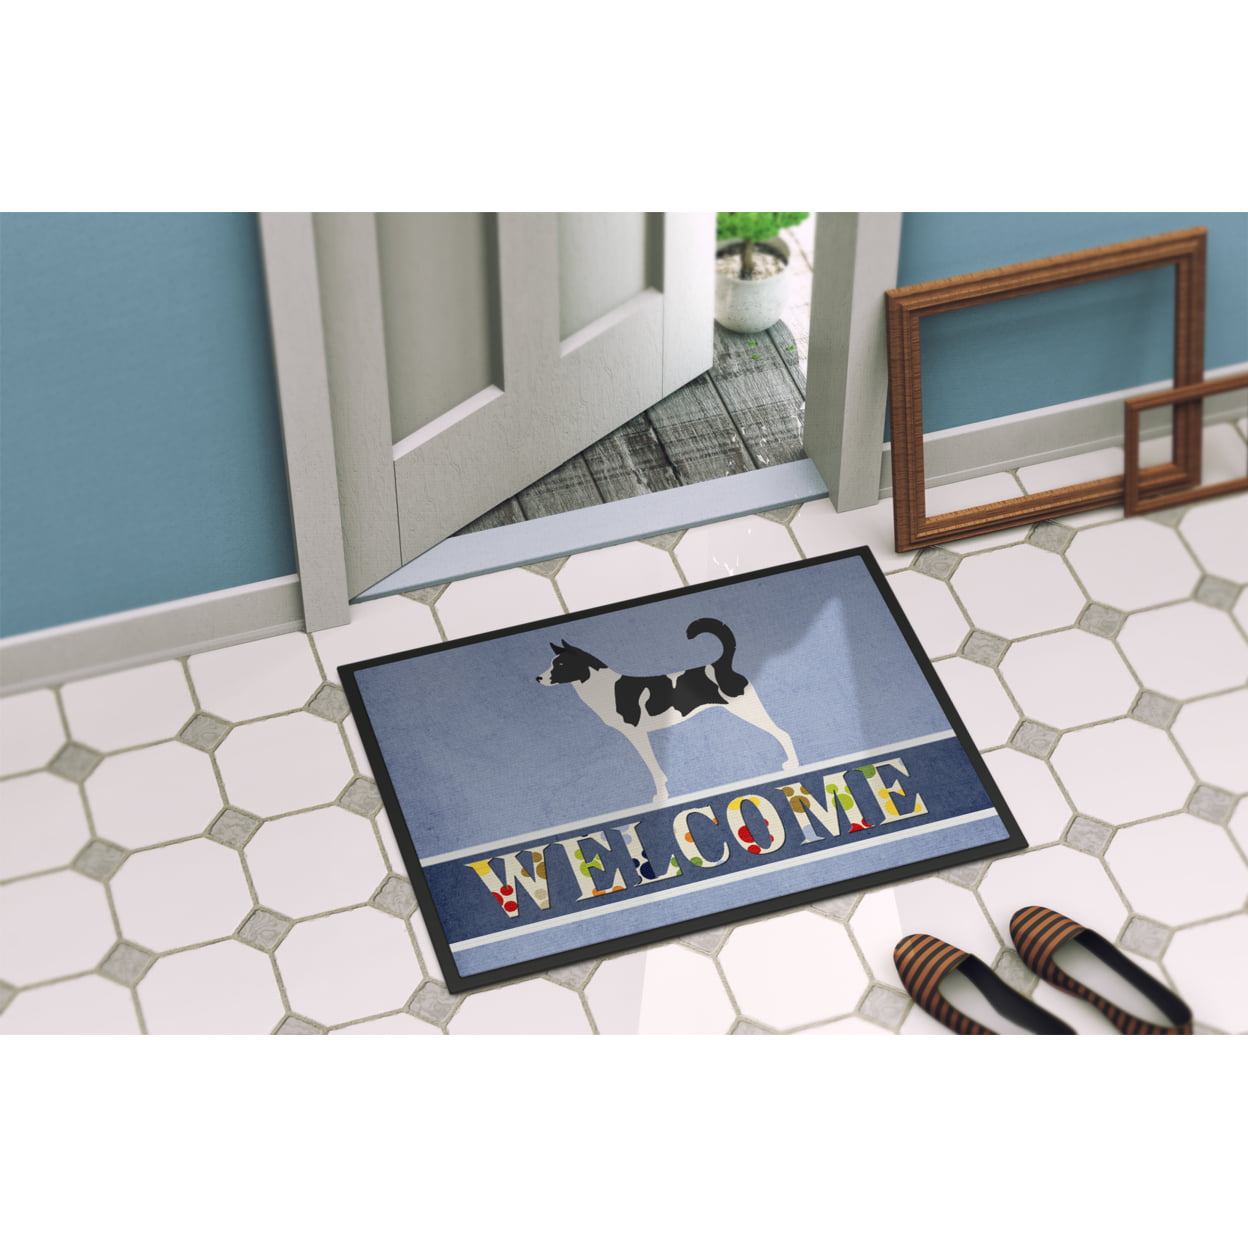 Softlife Chenille Dog Doormats Indoor Entrance,Pet Indoor Door Mats  Washable for Mud Entry Indoor Doormat With Dog Paws Prints,24x36,Gray 